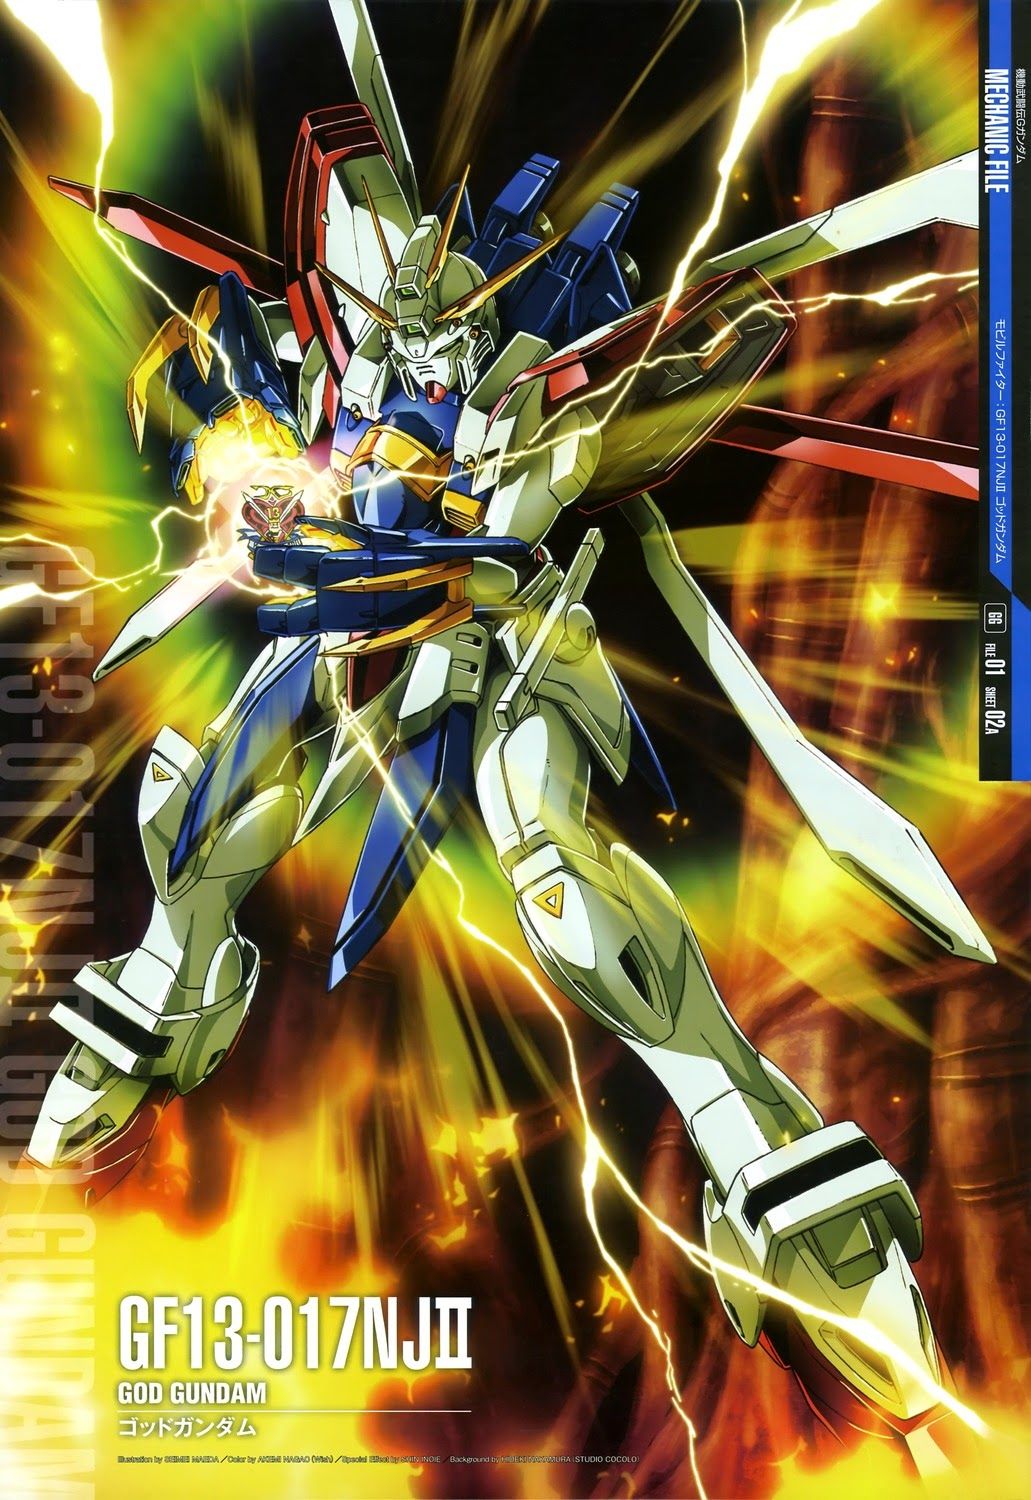 Gundam Perfect Gundam Mechanic Files Wallpaper / Poster Image. Gundam, Mobile fighter g gundam, Gundam art